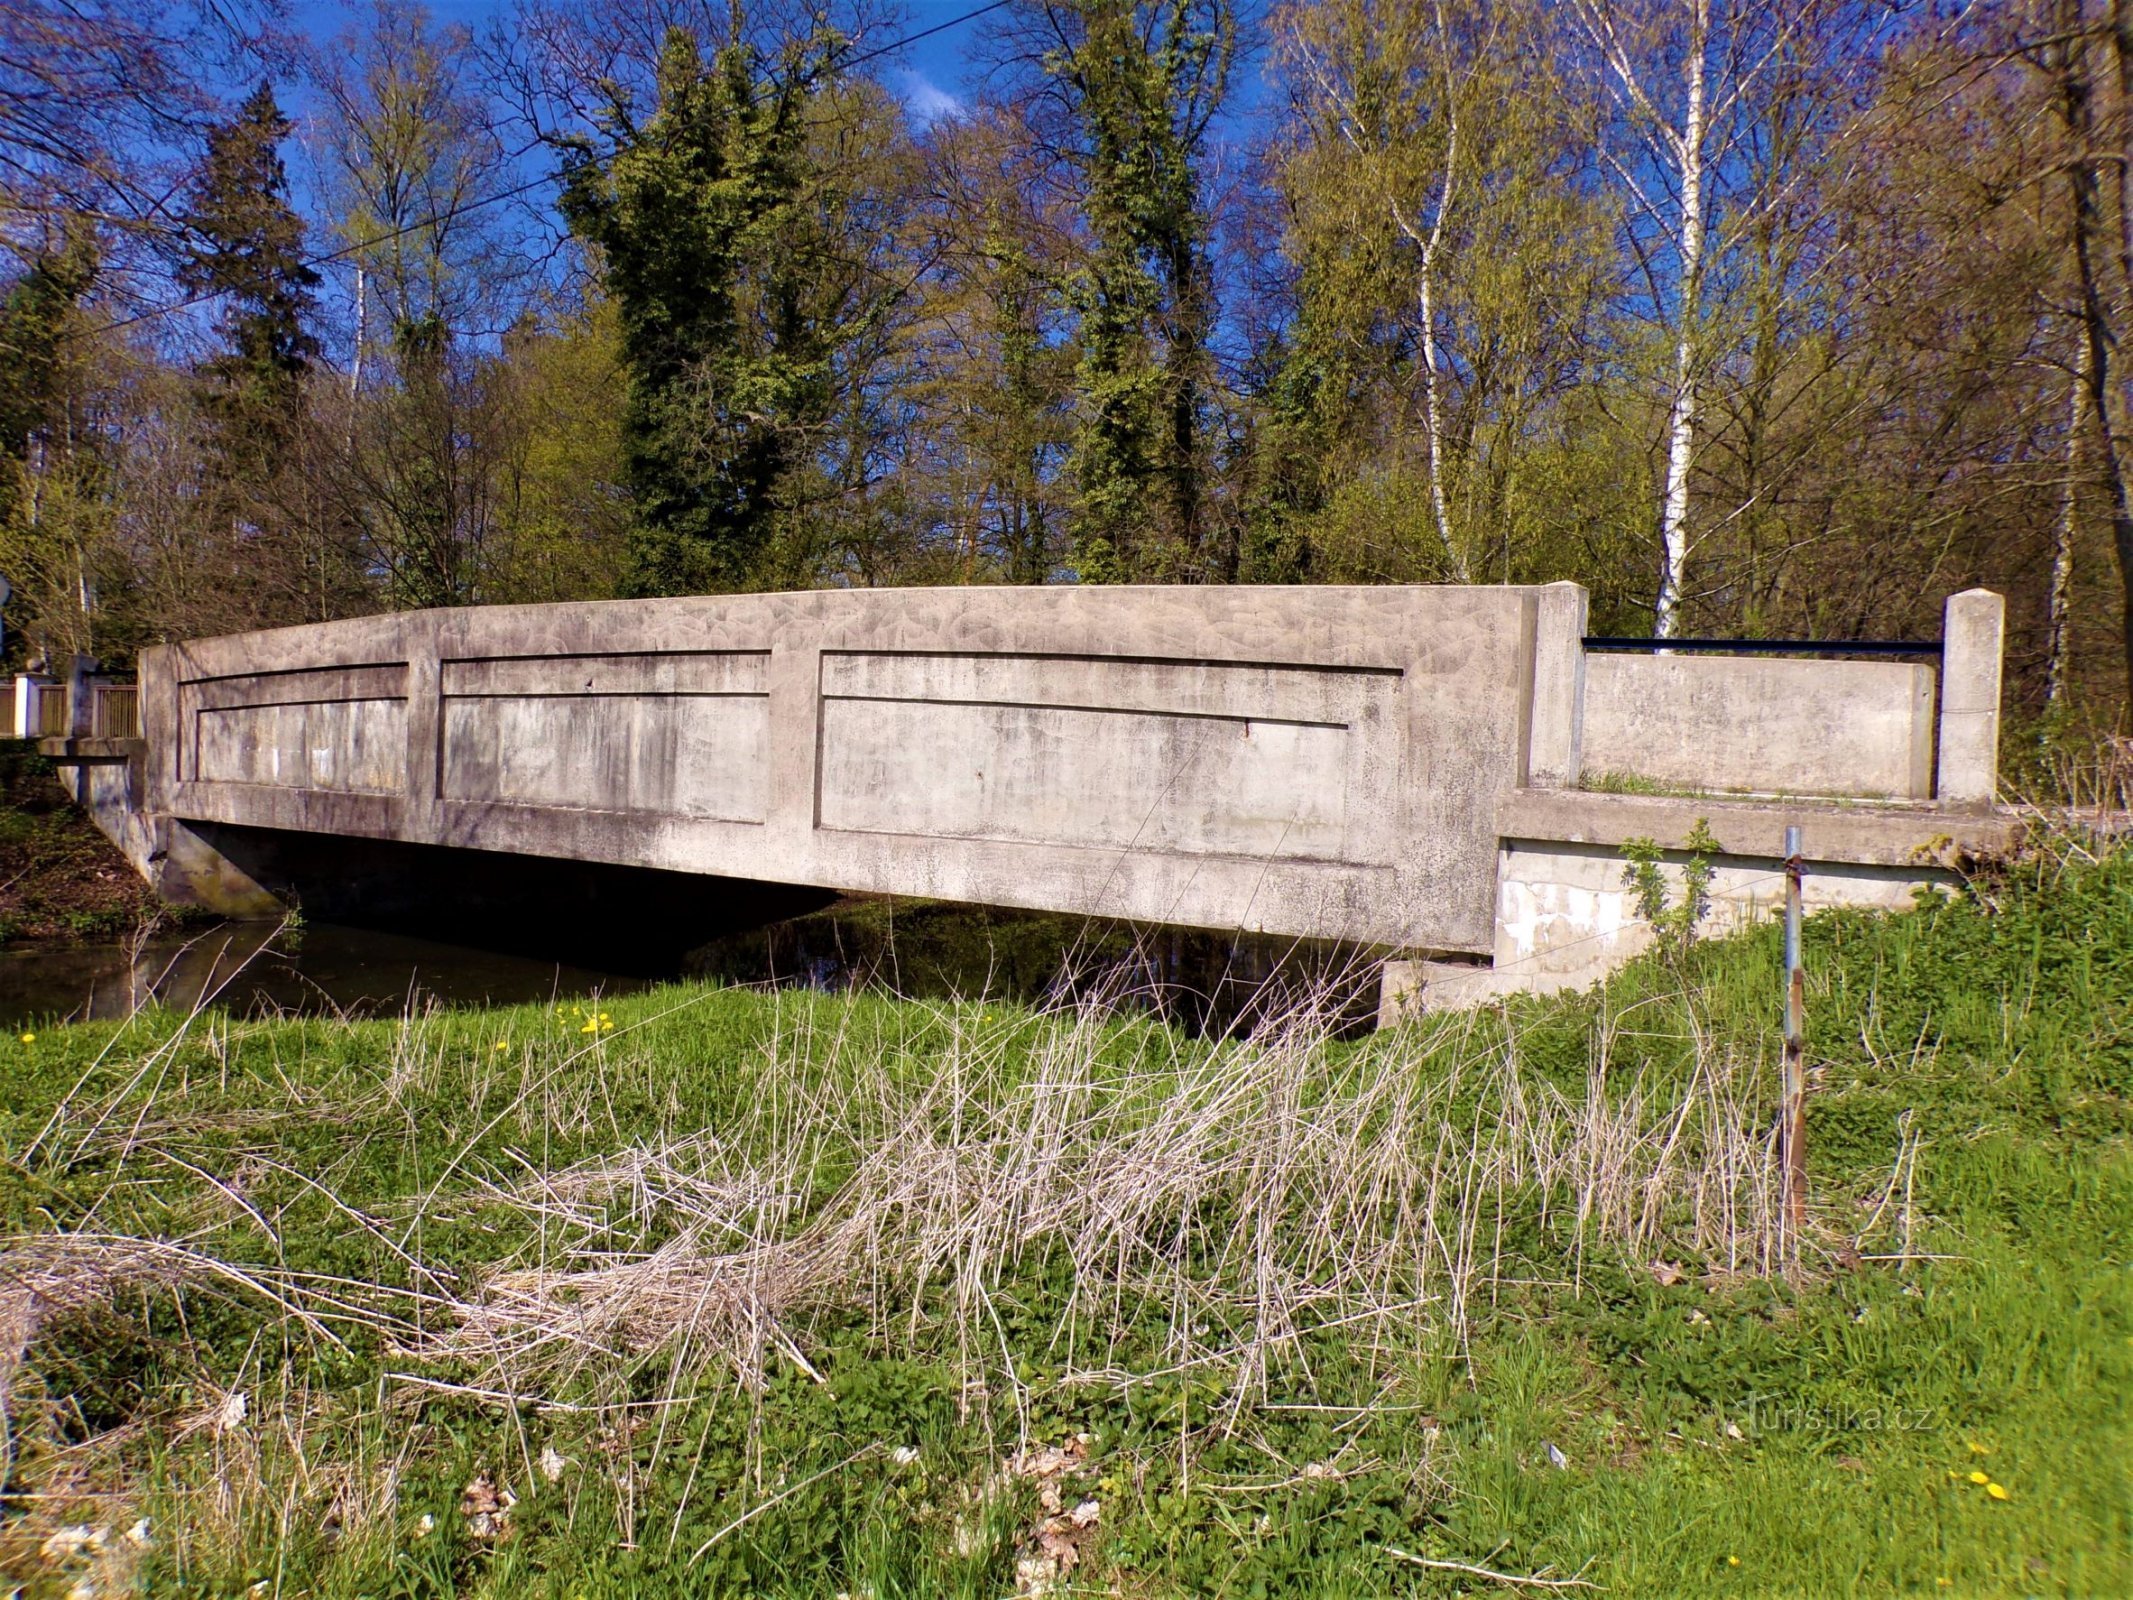 Puente de hormigón, el llamado puente medio (Skřivany, 30.4.2021/XNUMX/XNUMX)